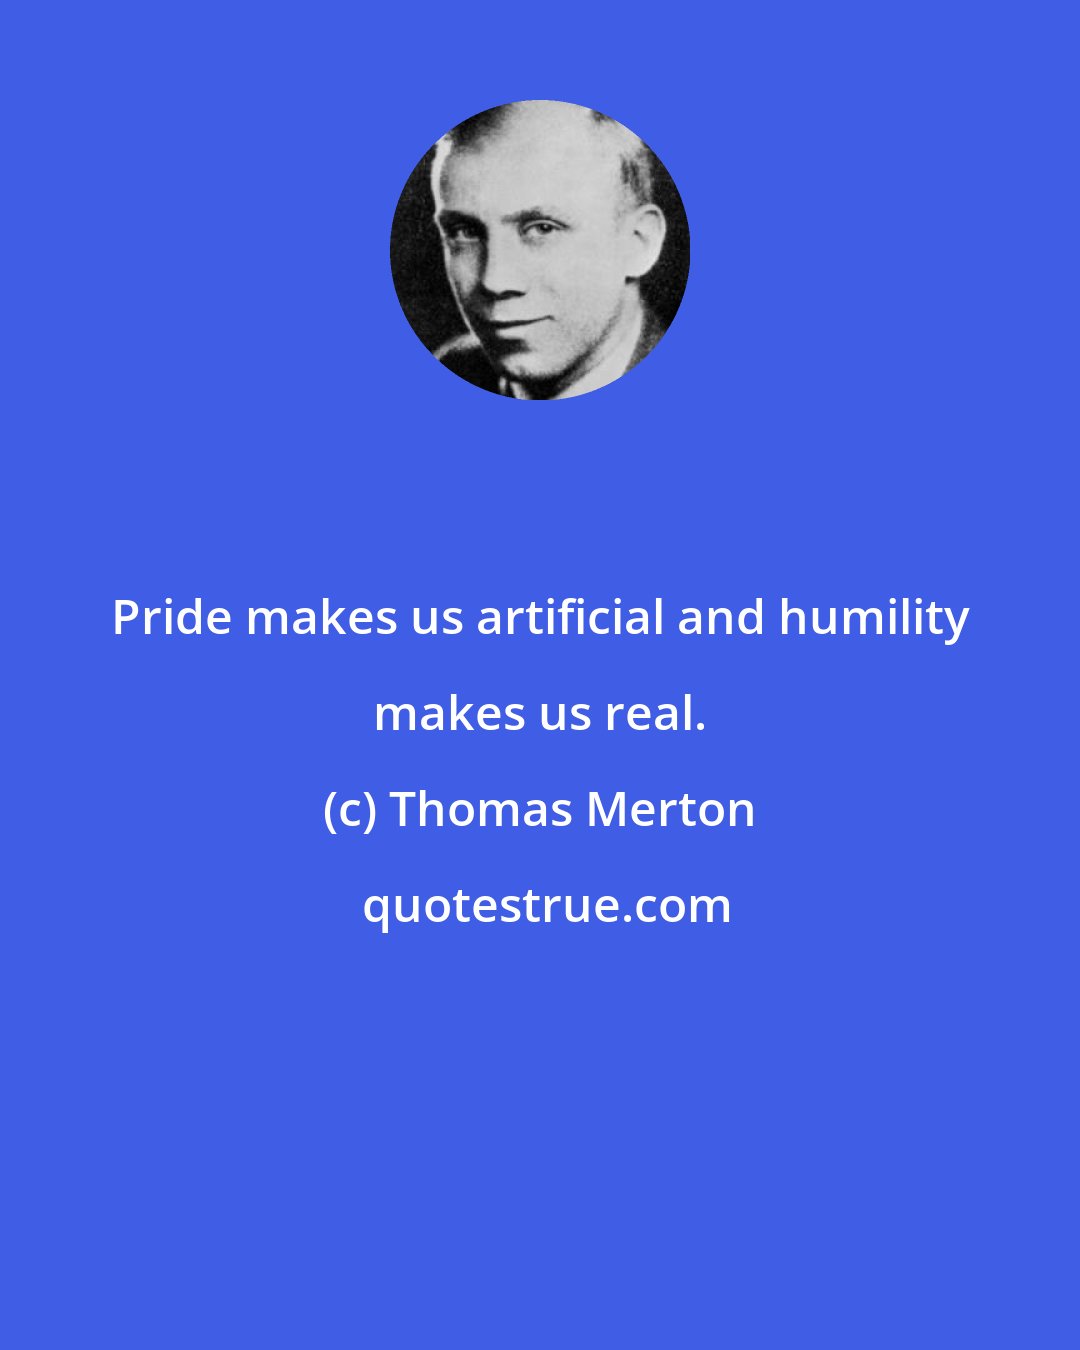 Thomas Merton: Pride makes us artificial and humility makes us real.